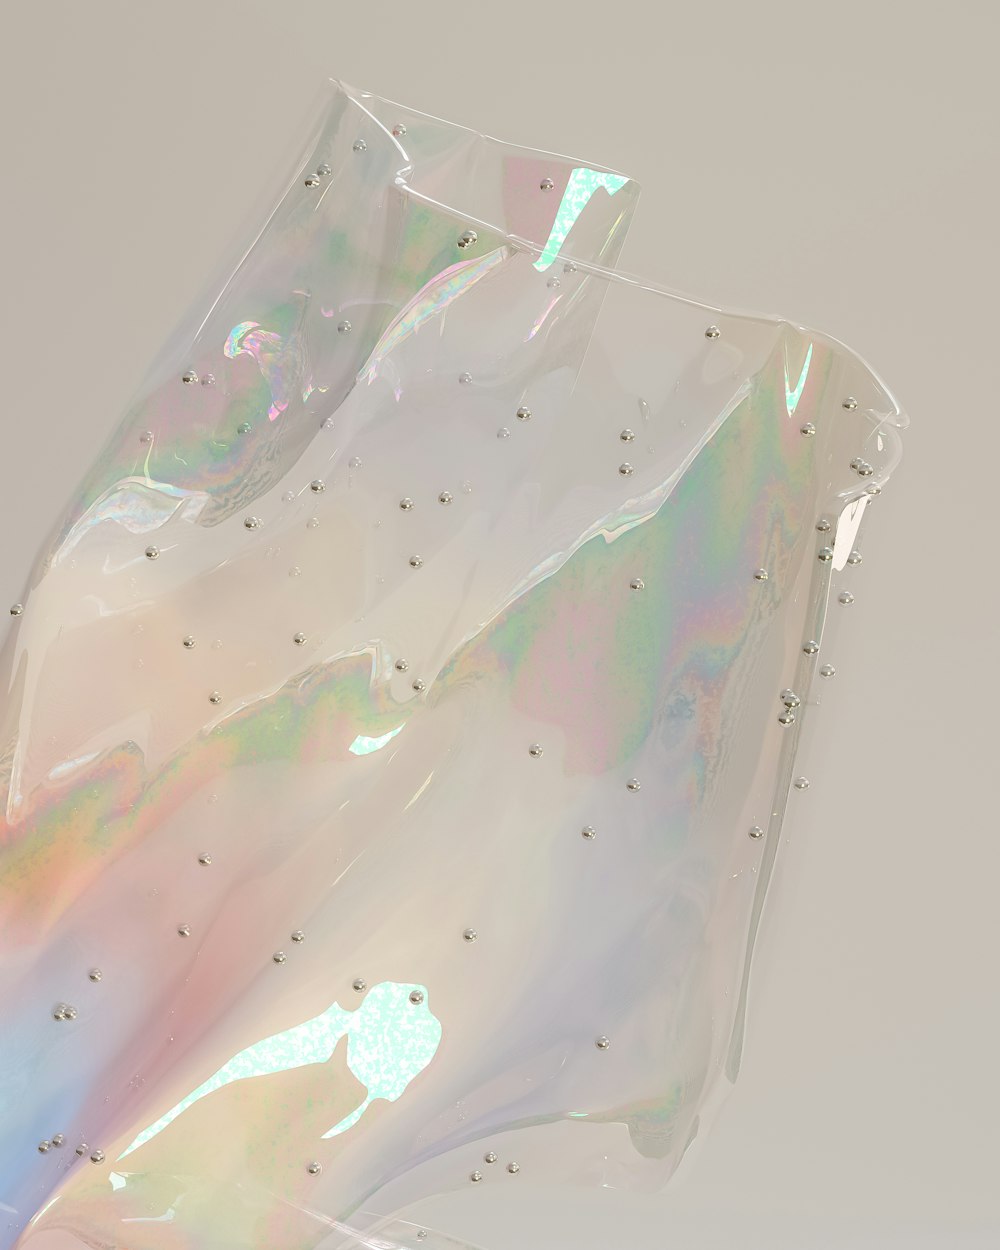 un sac en plastique avec des holographies dessus